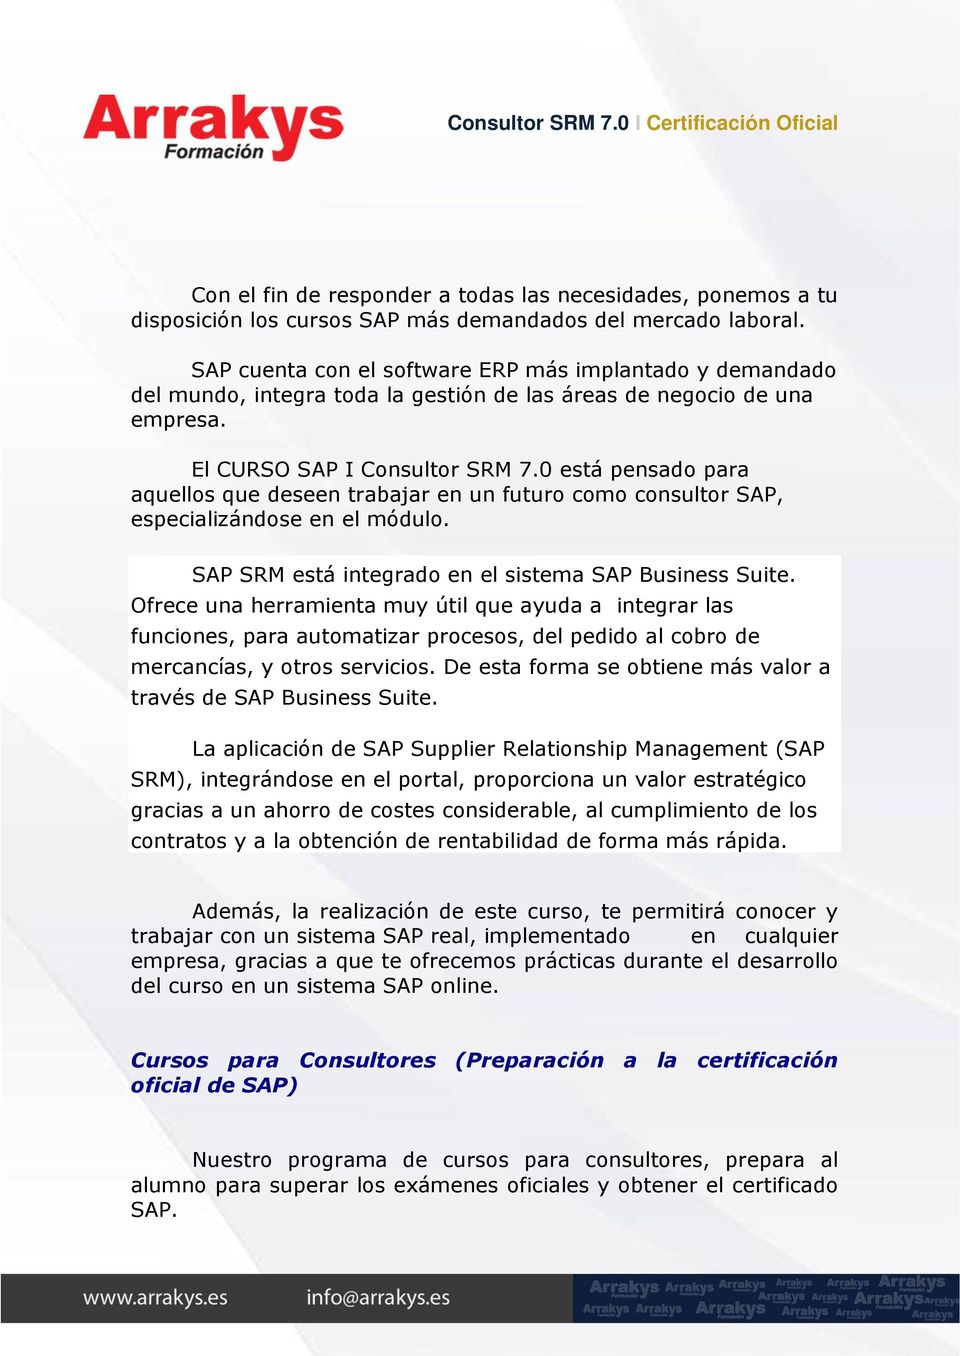 0 está pensado para aquellos que deseen trabajar en un futuro como consultor SAP, especializándose en el módulo. SAP SRM está integrado en el sistema SAP Business Suite.